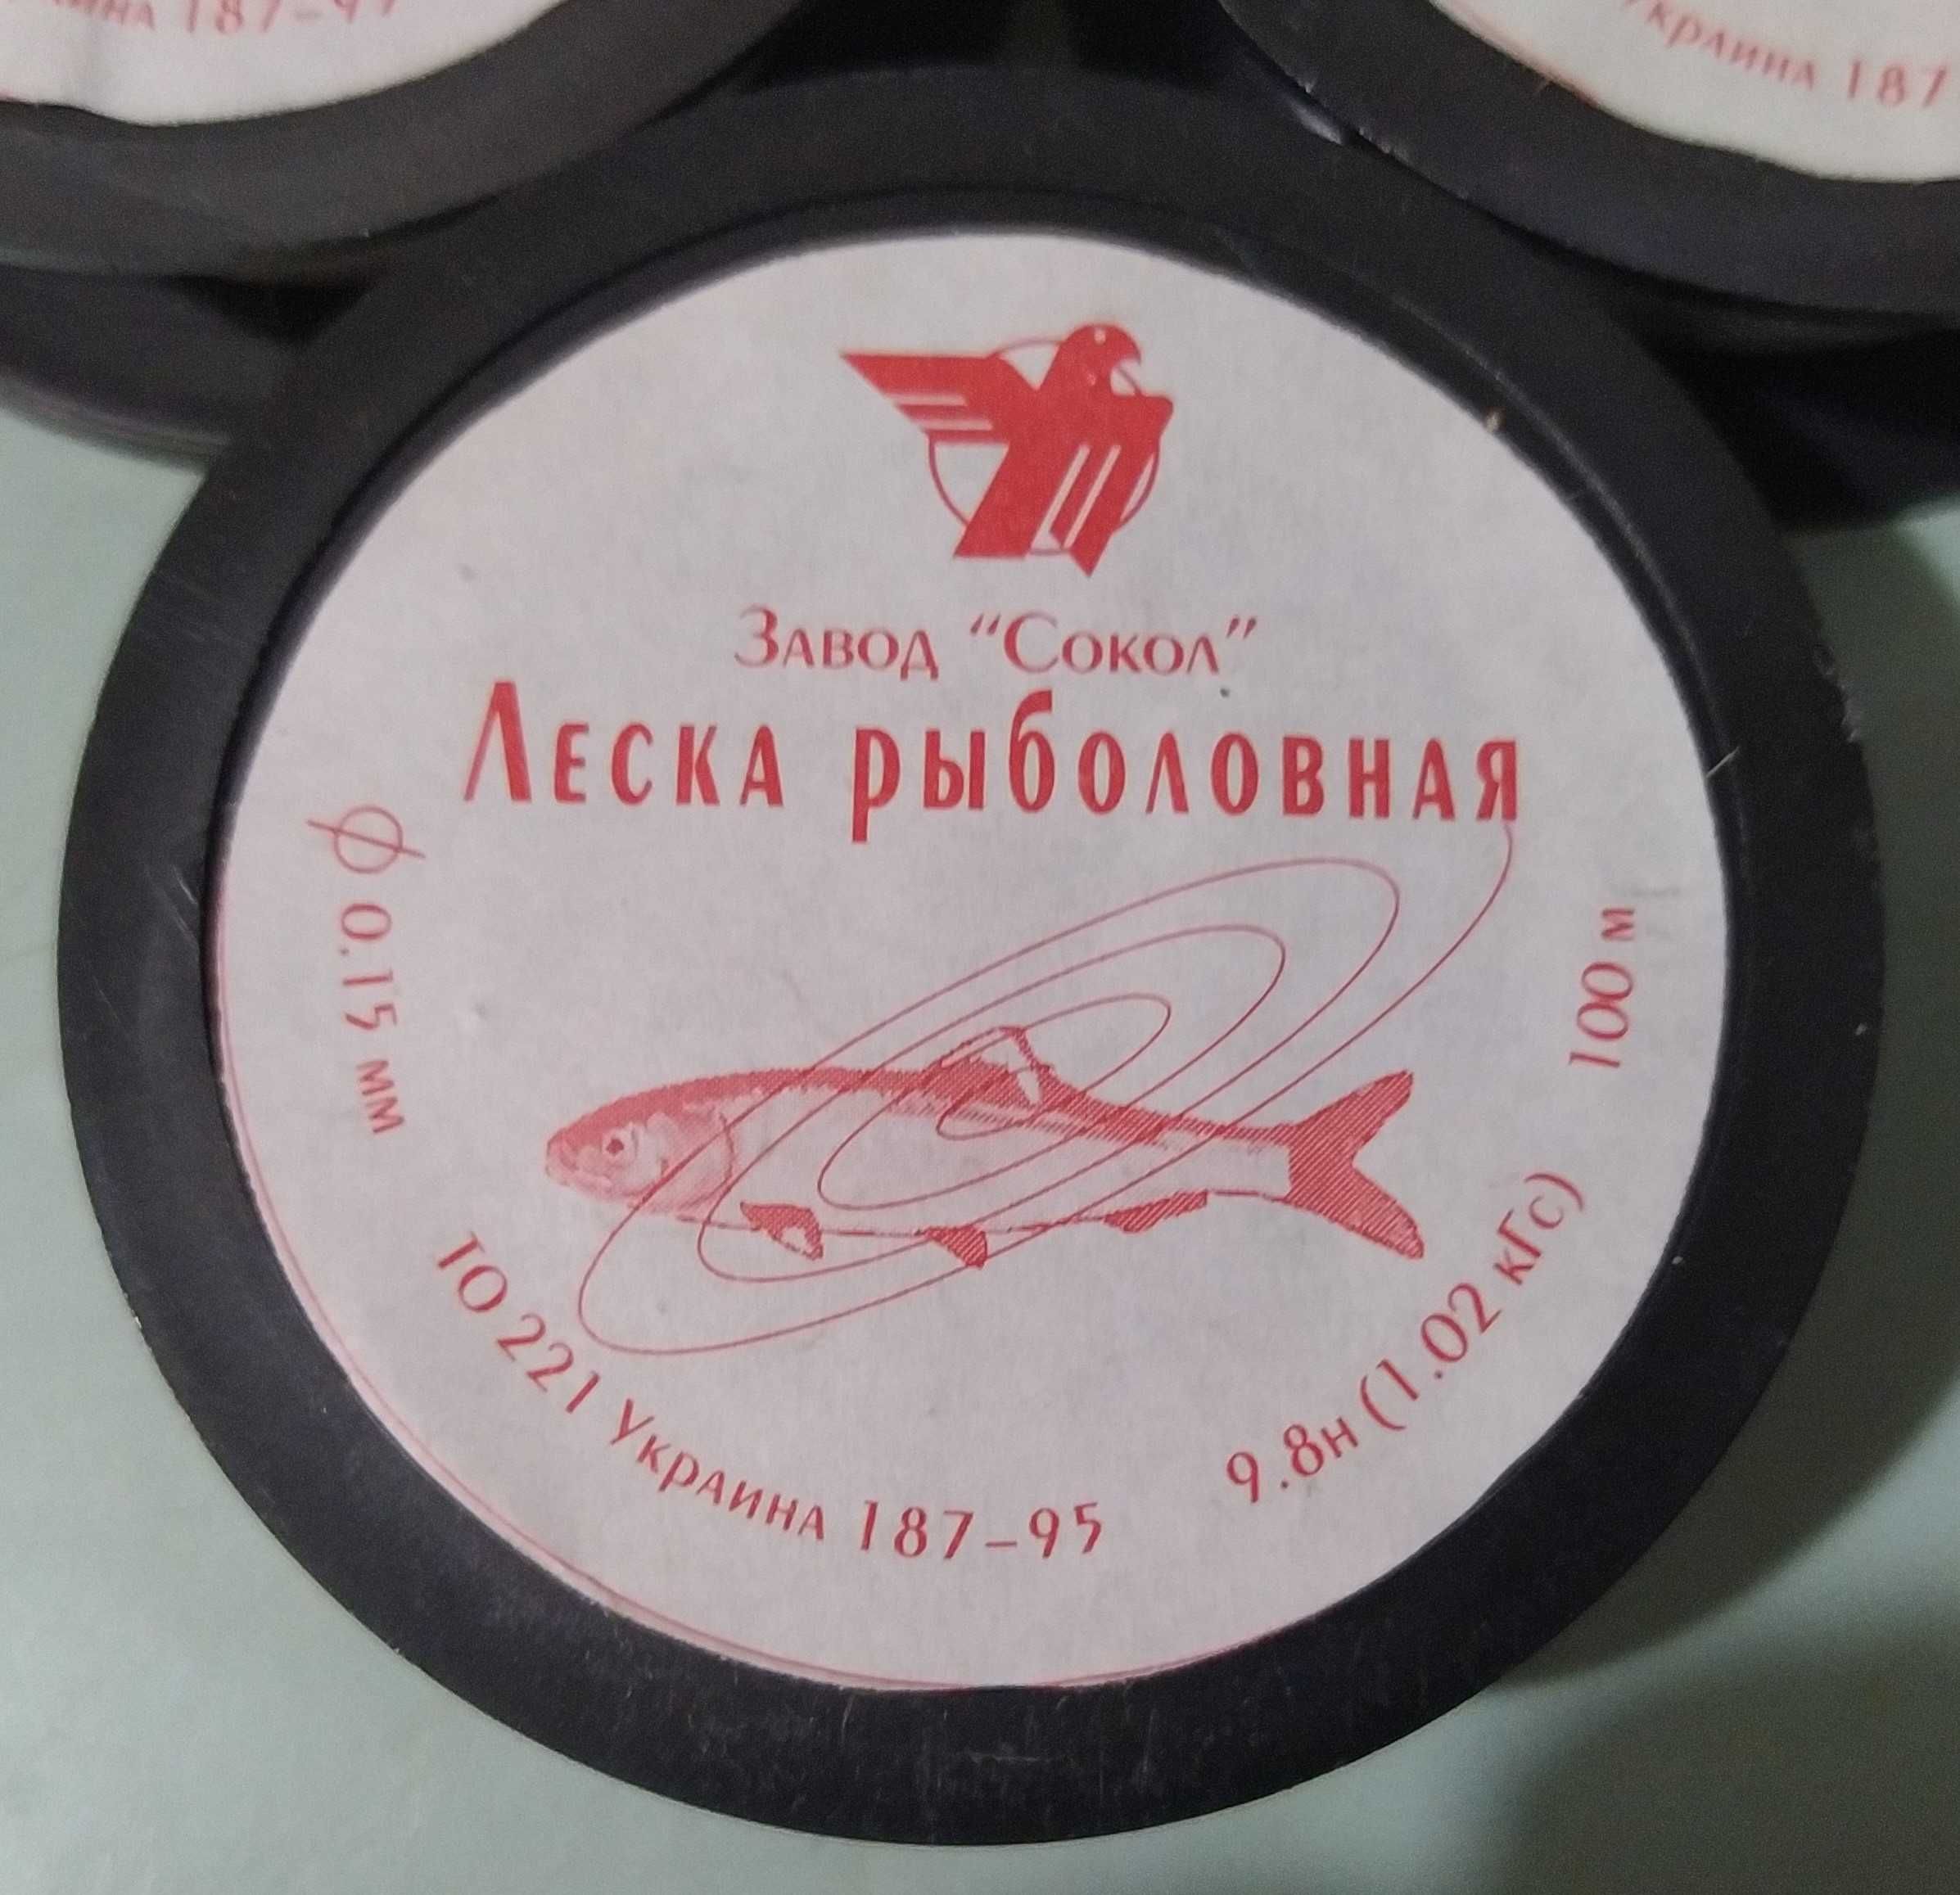 Леска рыболовная завод "Сокол" 0,15 мм